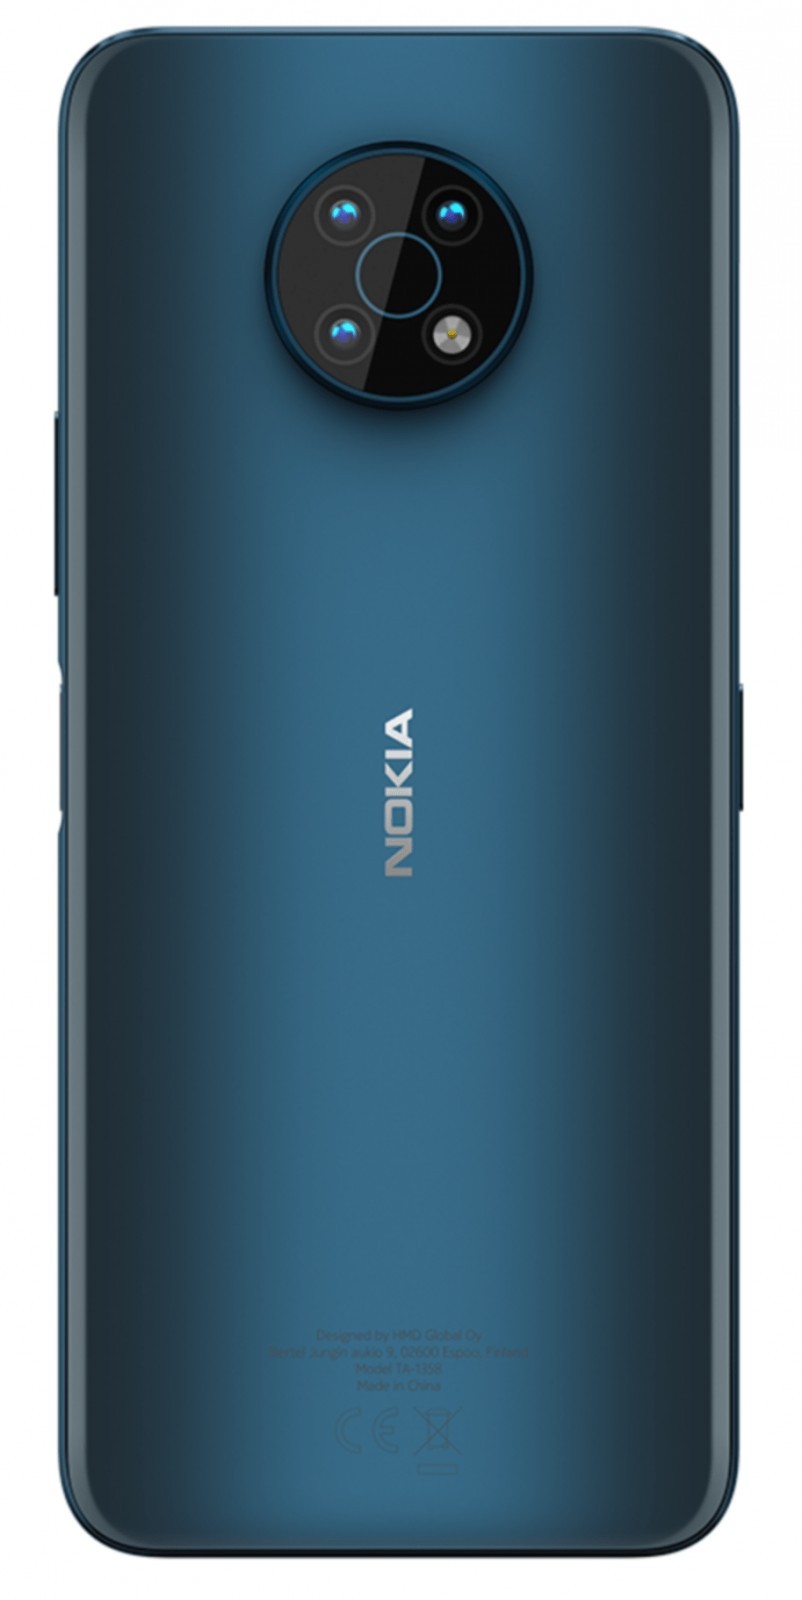 Nokia G50 lộ cấu hình thuộc phân khúc smartphone 5G giá rẻ ảnh 3